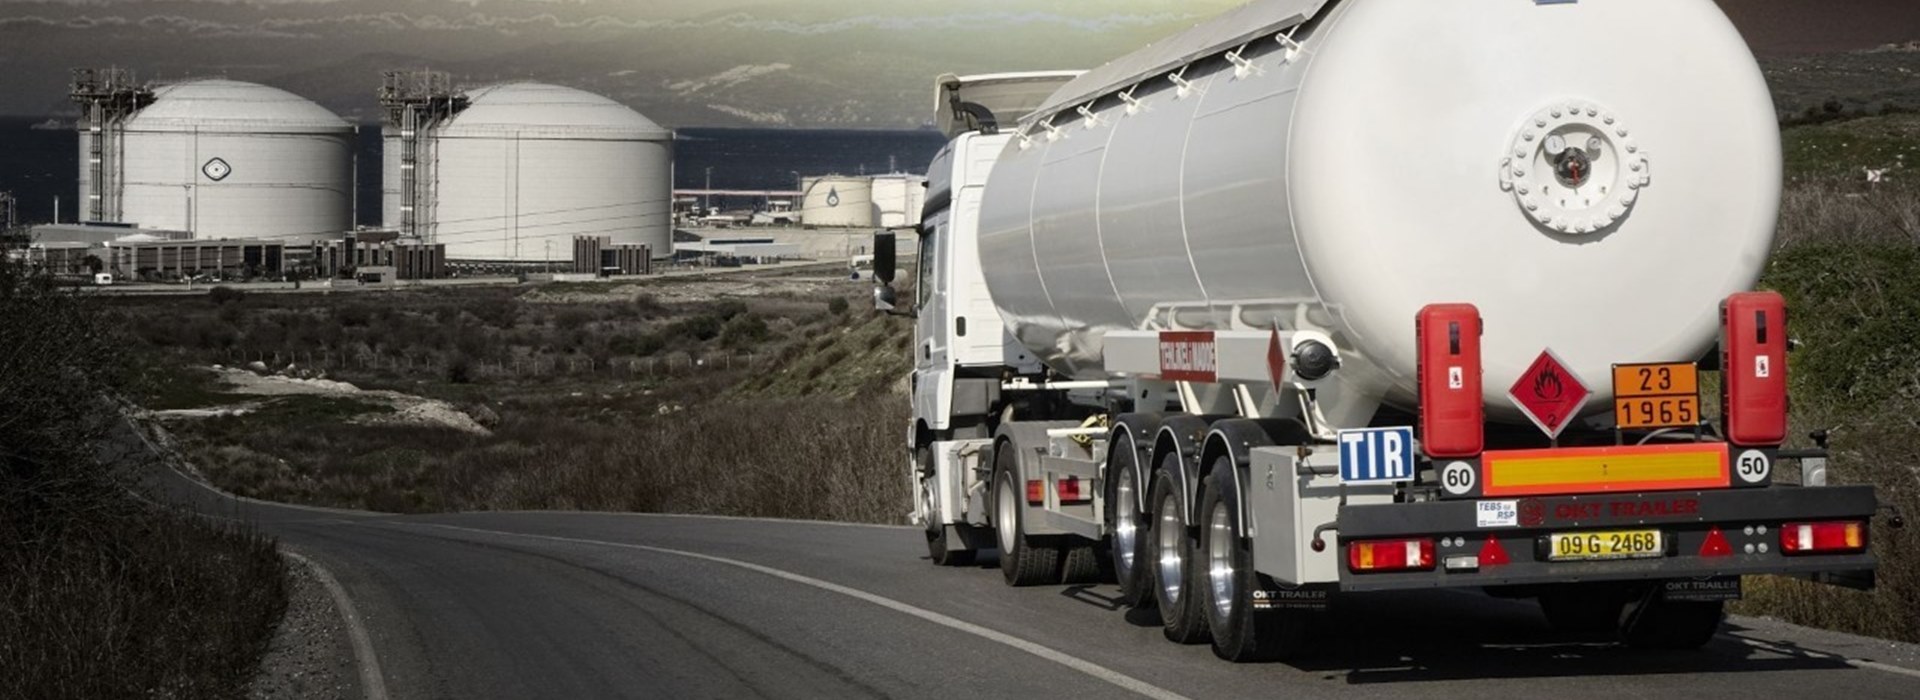 Перевозка опасных грузов автомобильным транспортом: требования, необходимые документы